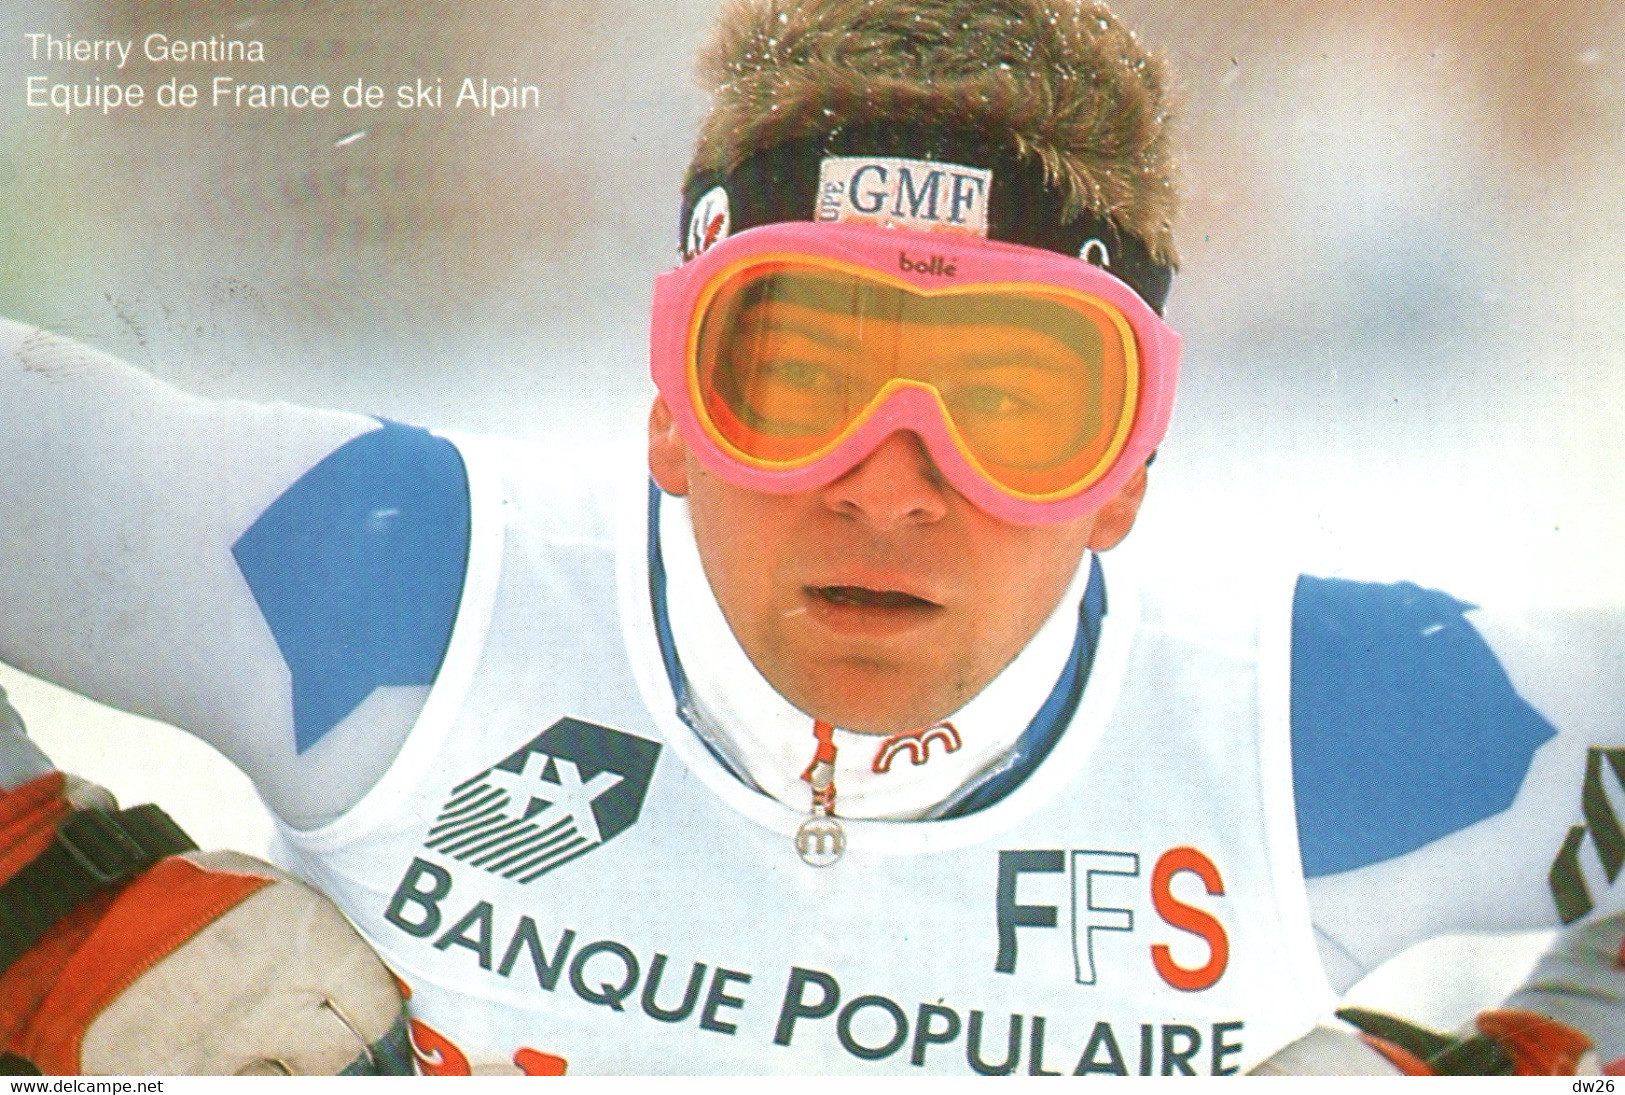 Thierry Gentina - Equipe De France De Ski Alpin (Descente) - Publicité Banque Populaire 1992 - Martiaux